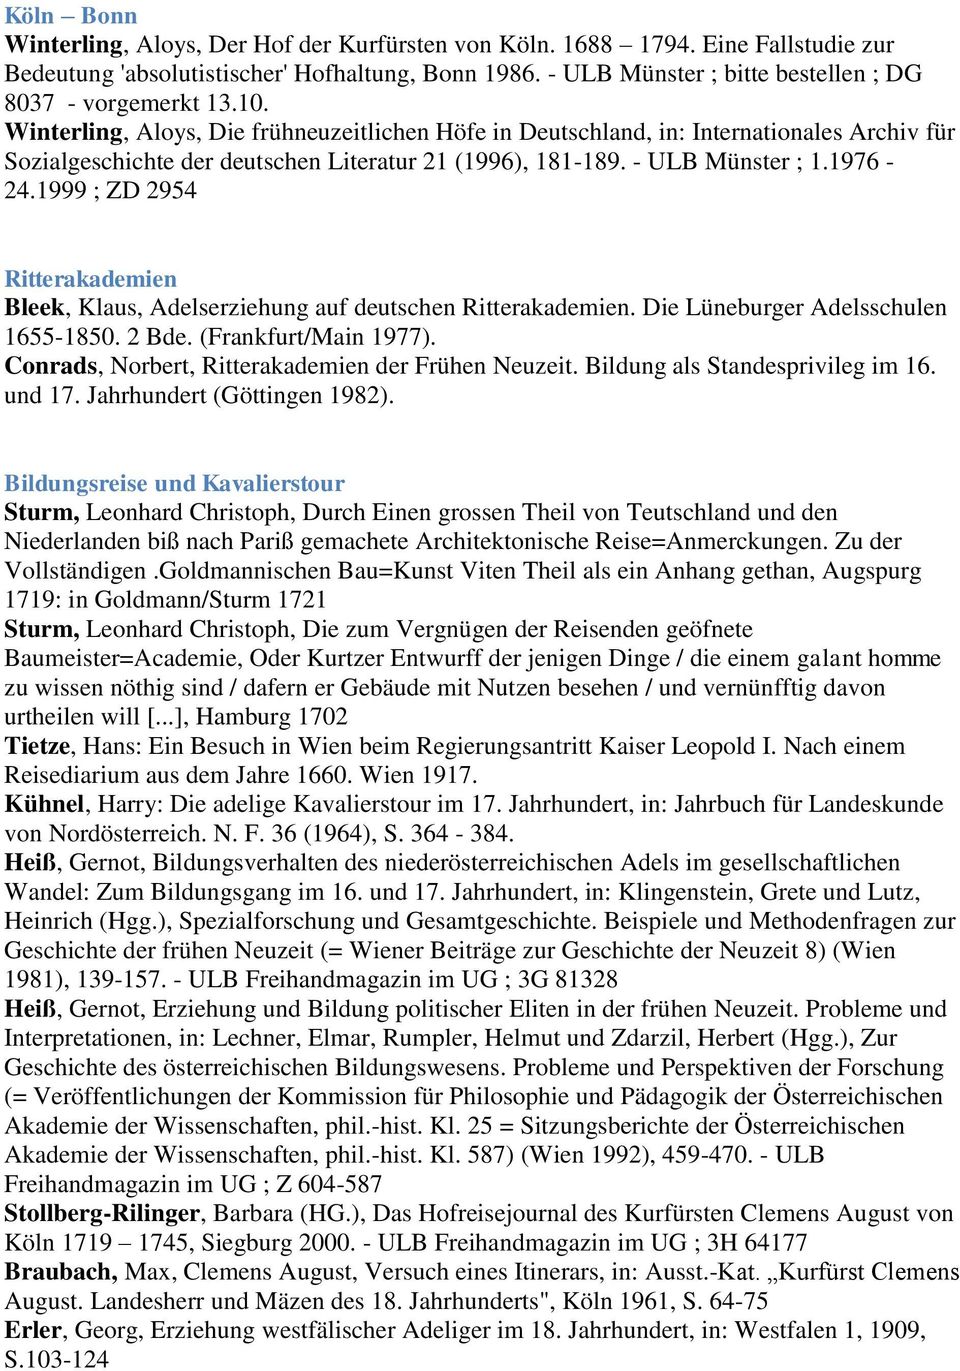 Winterling, Aloys, Die frühneuzeitlichen Höfe in Deutschland, in: Internationales Archiv für Sozialgeschichte der deutschen Literatur 21 (1996), 181-189. - ULB Münster ; 1.1976-24.